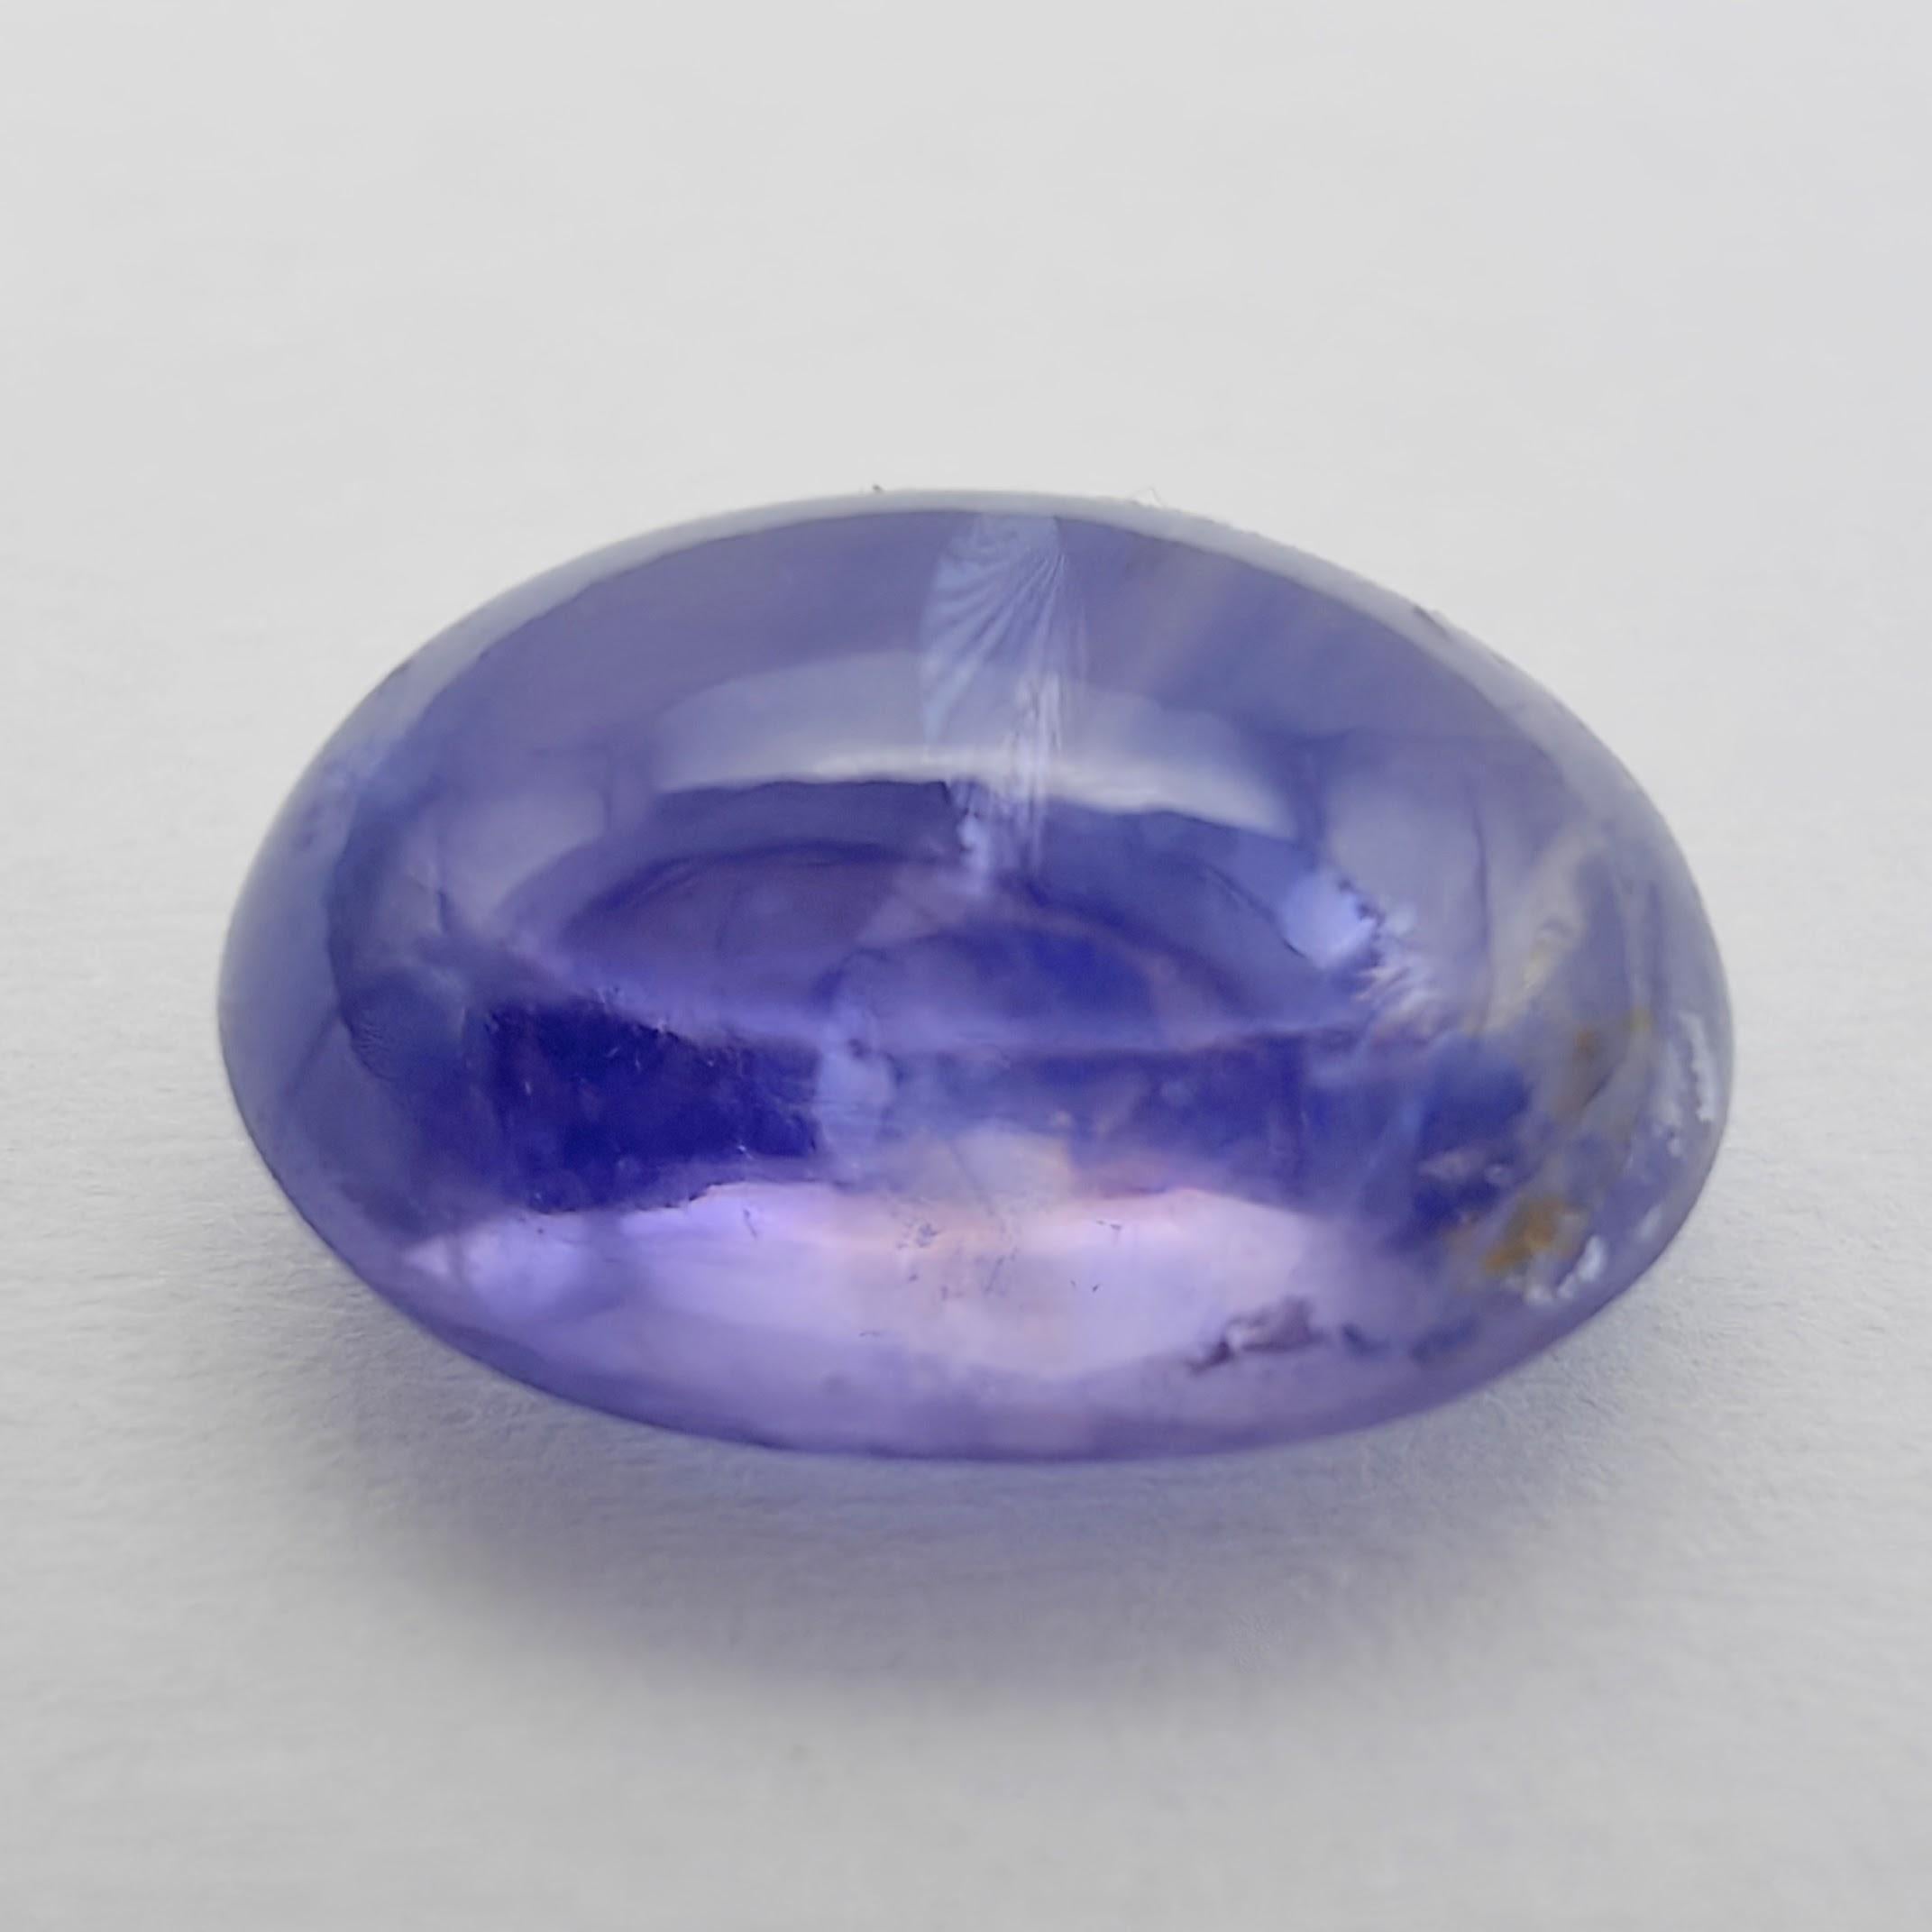 4.27 Carat IGI Certified Natural Sri Lanka Oval Cabochon Violetish Blue Sapphire For Sale 2